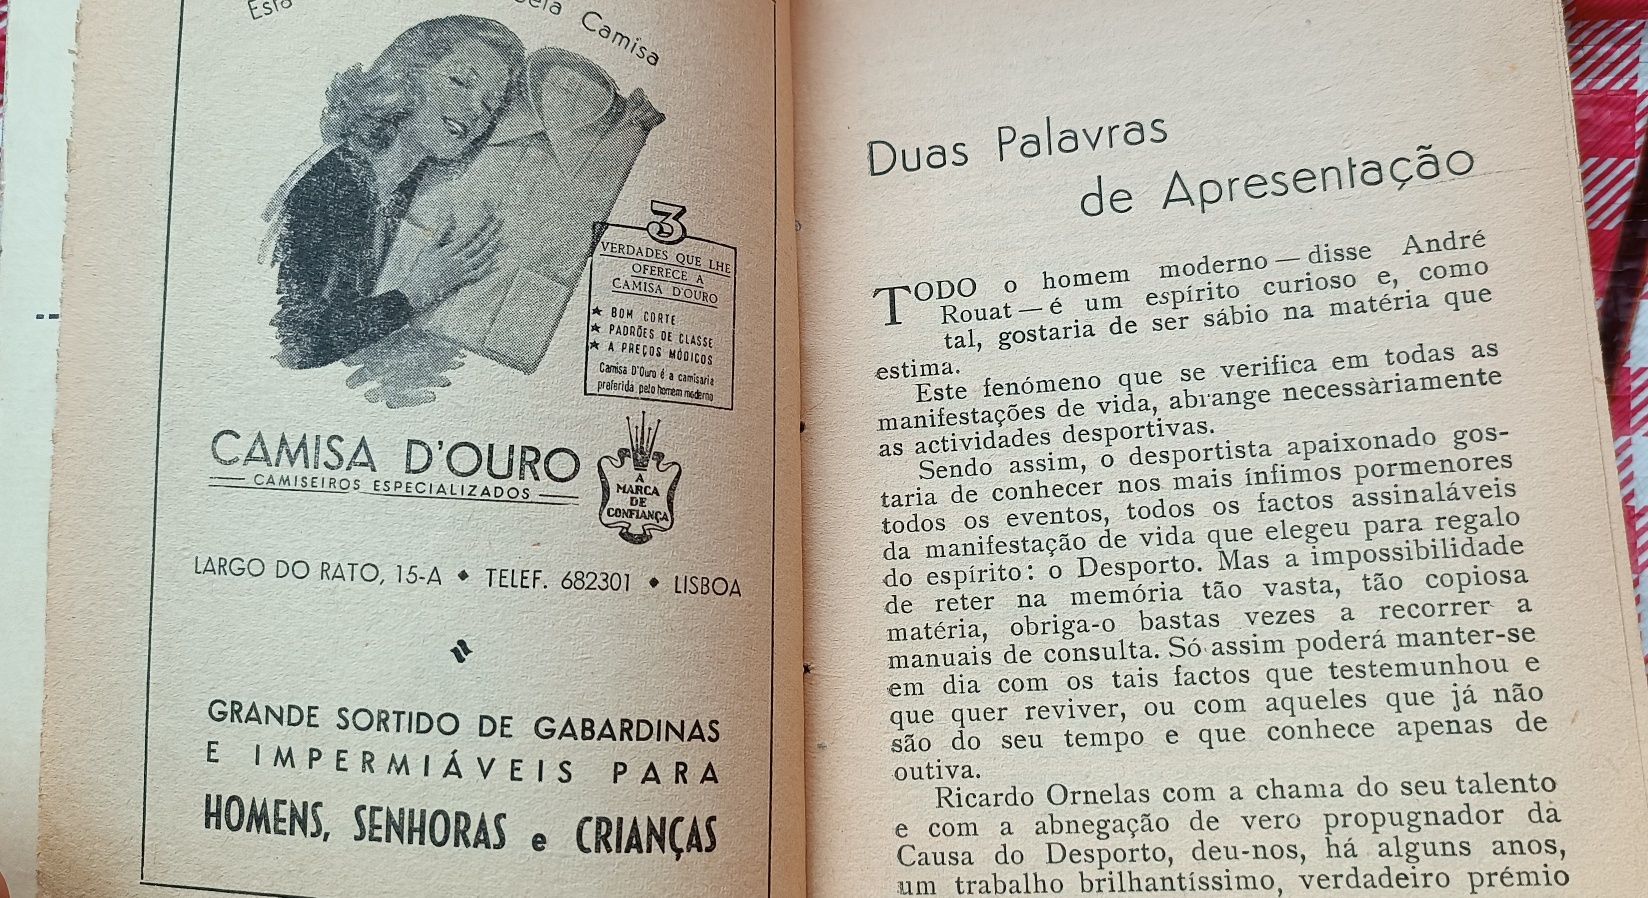 Livro história do futebol português 1958